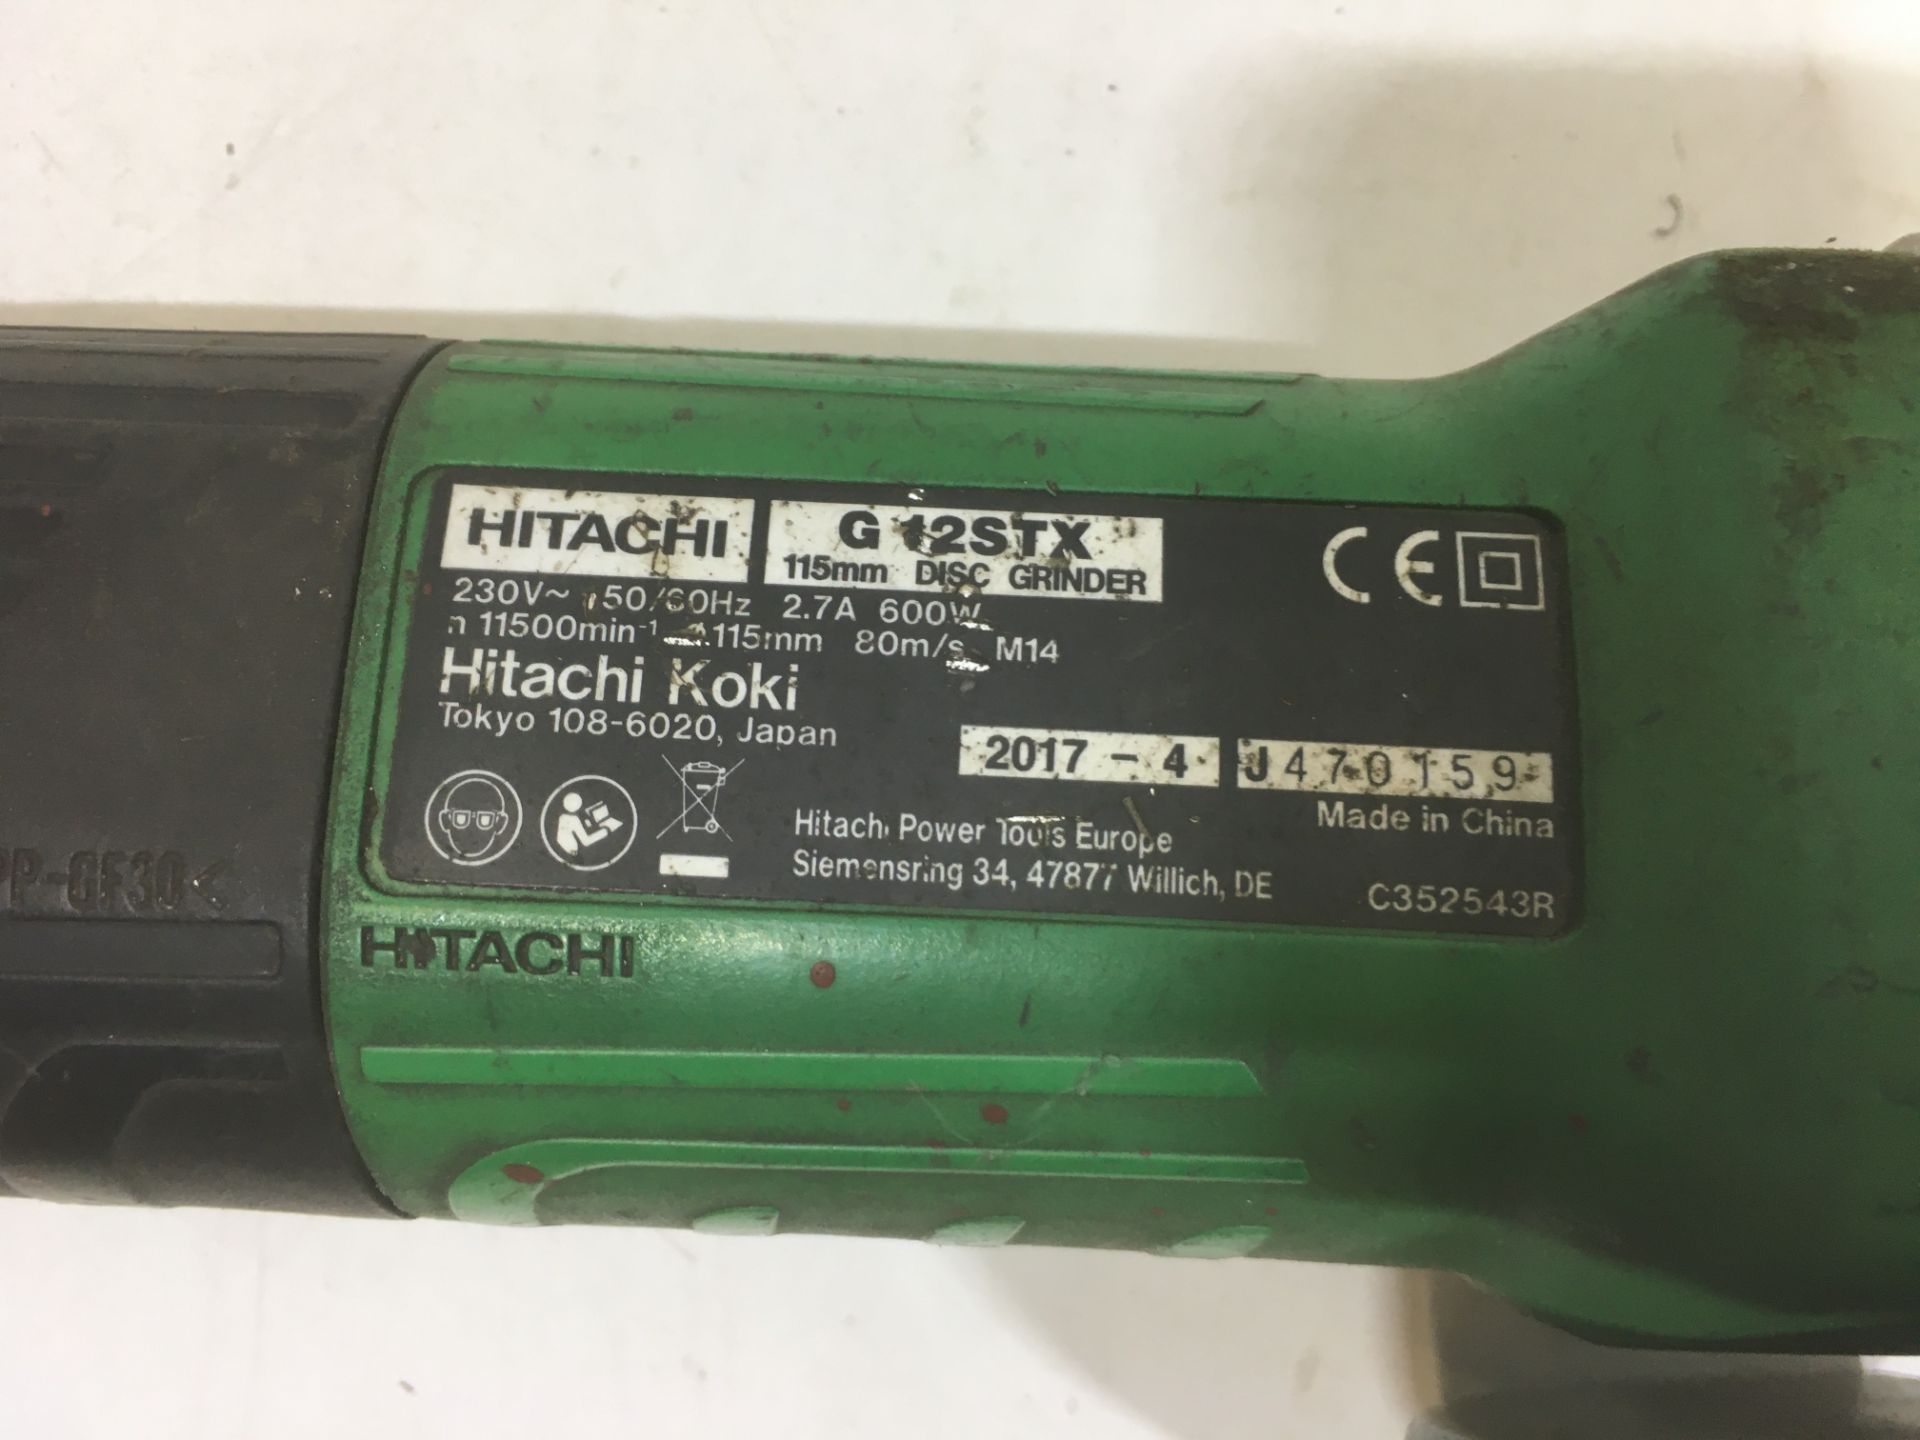 Hitachi G 12STX 115mm Grinder | 240v - Image 3 of 4